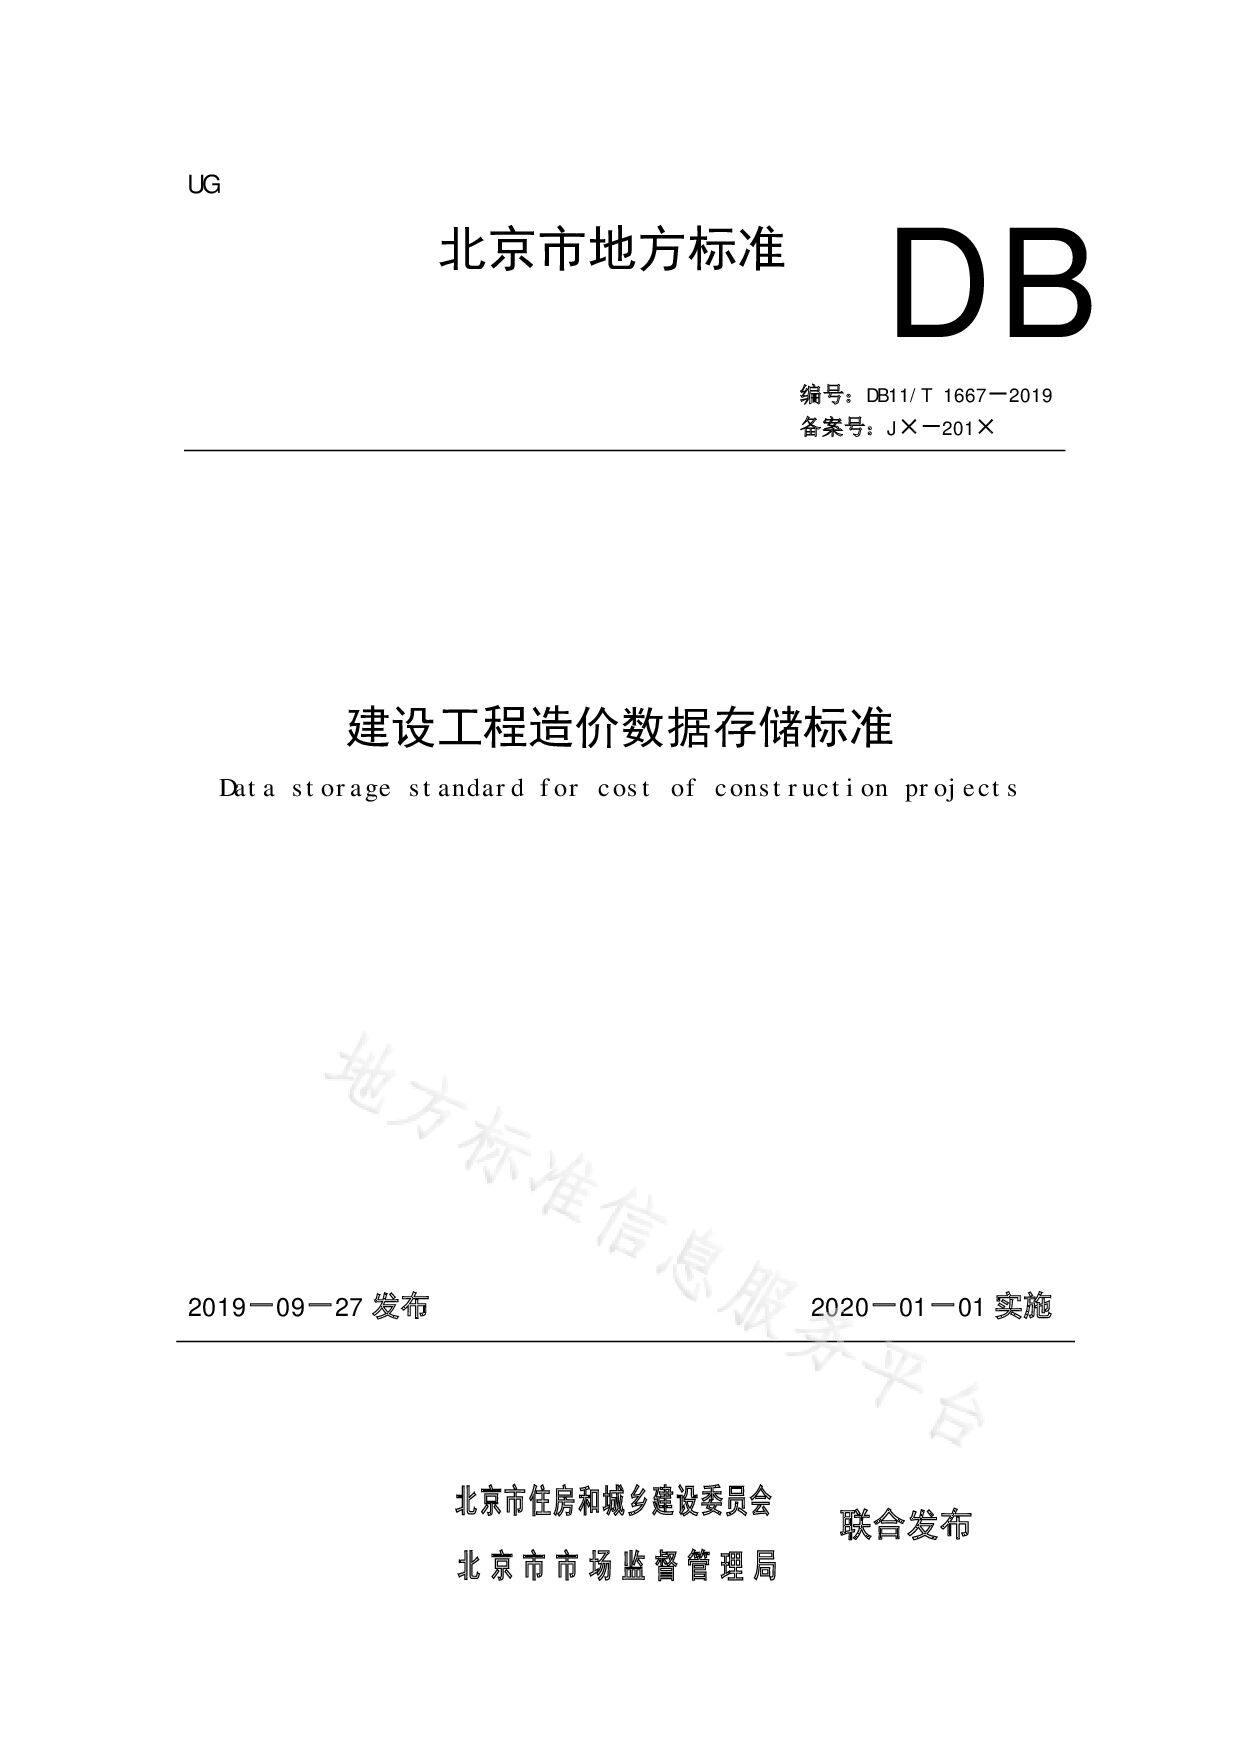 DB11/T 1667-2019封面图